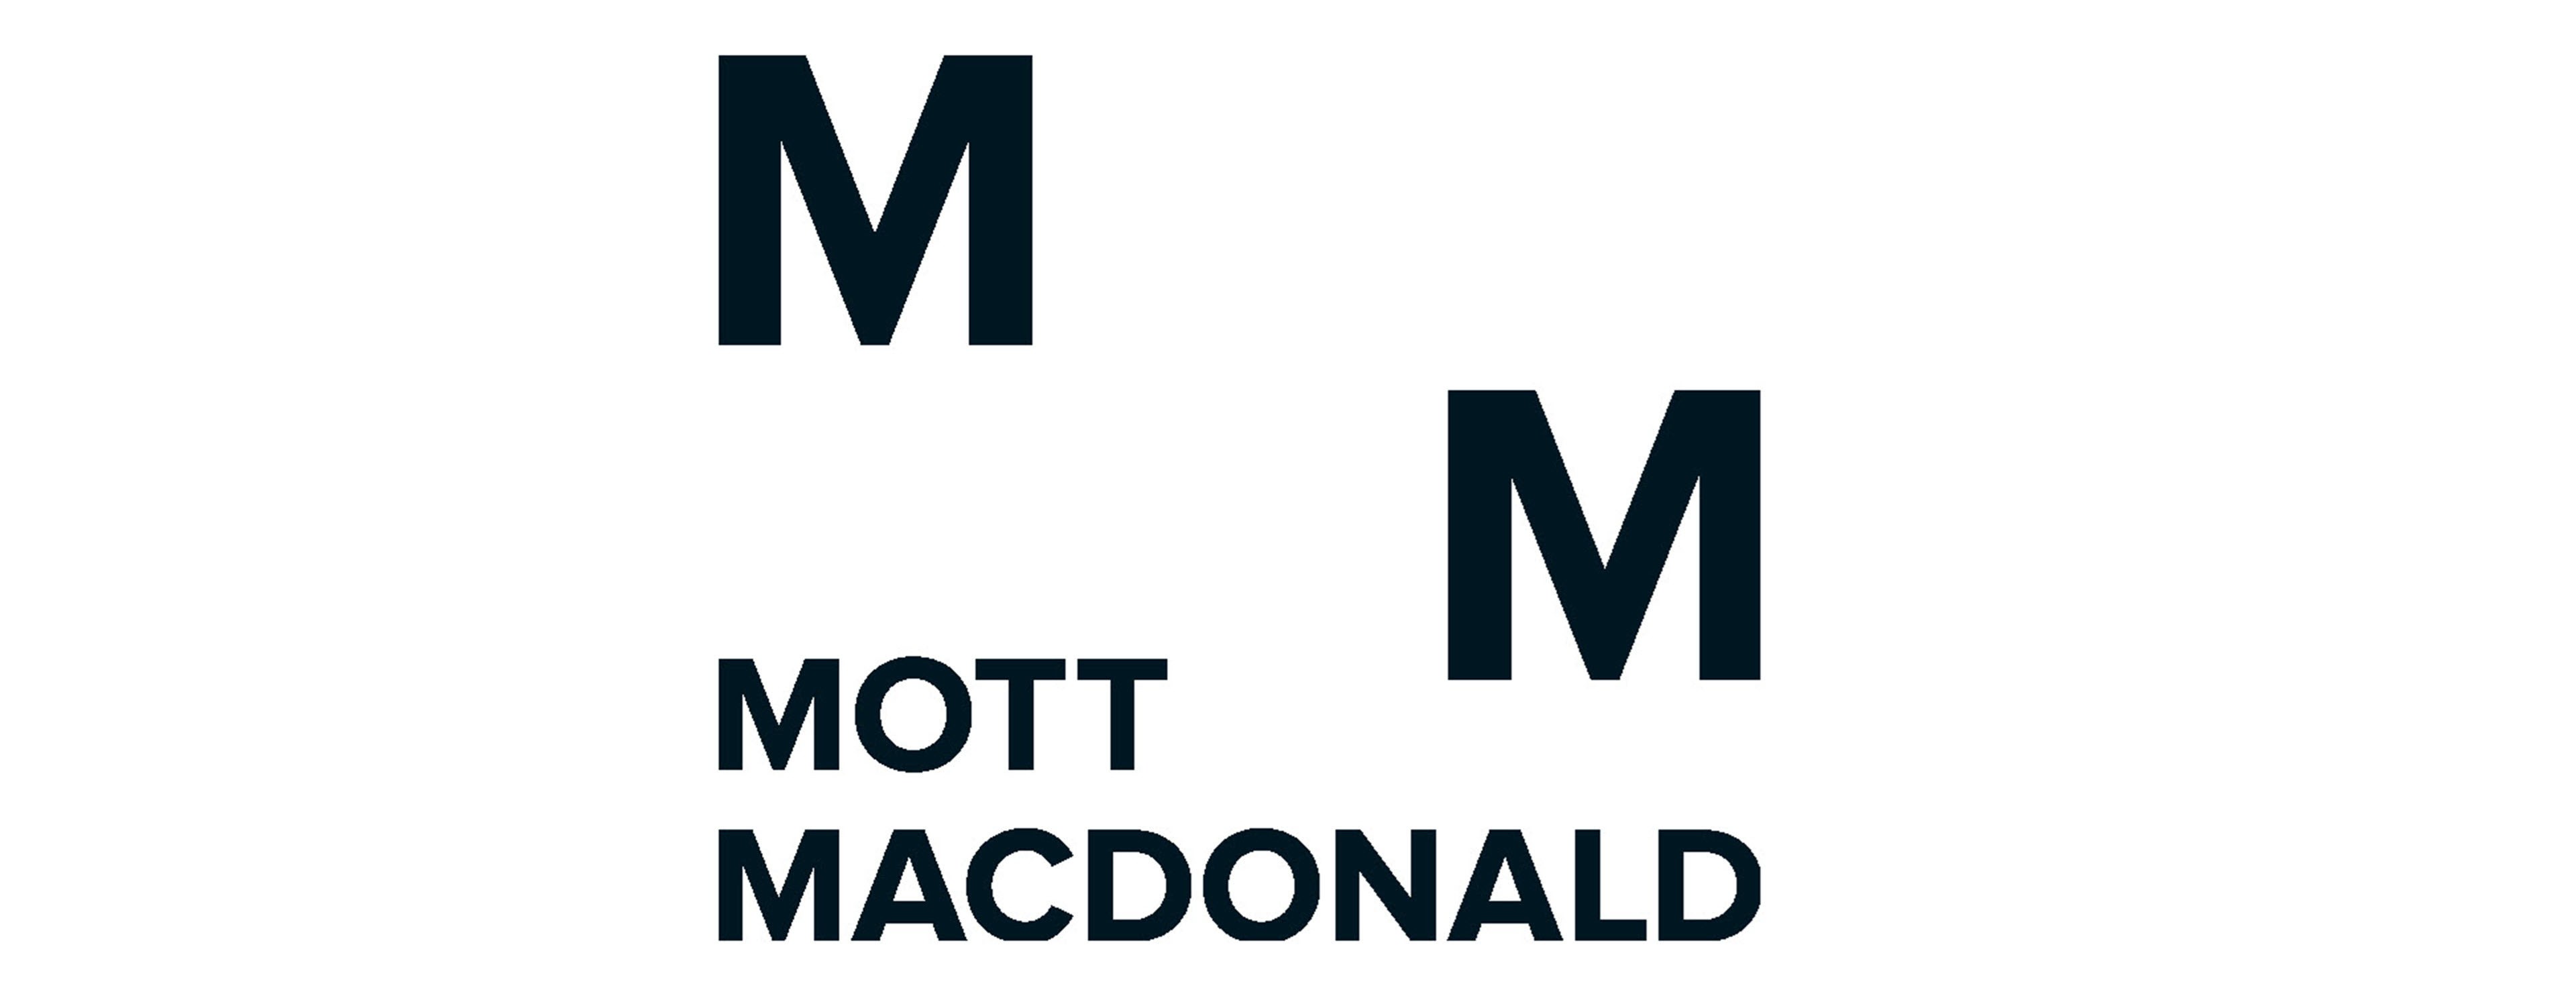 
            Logo de MM
        